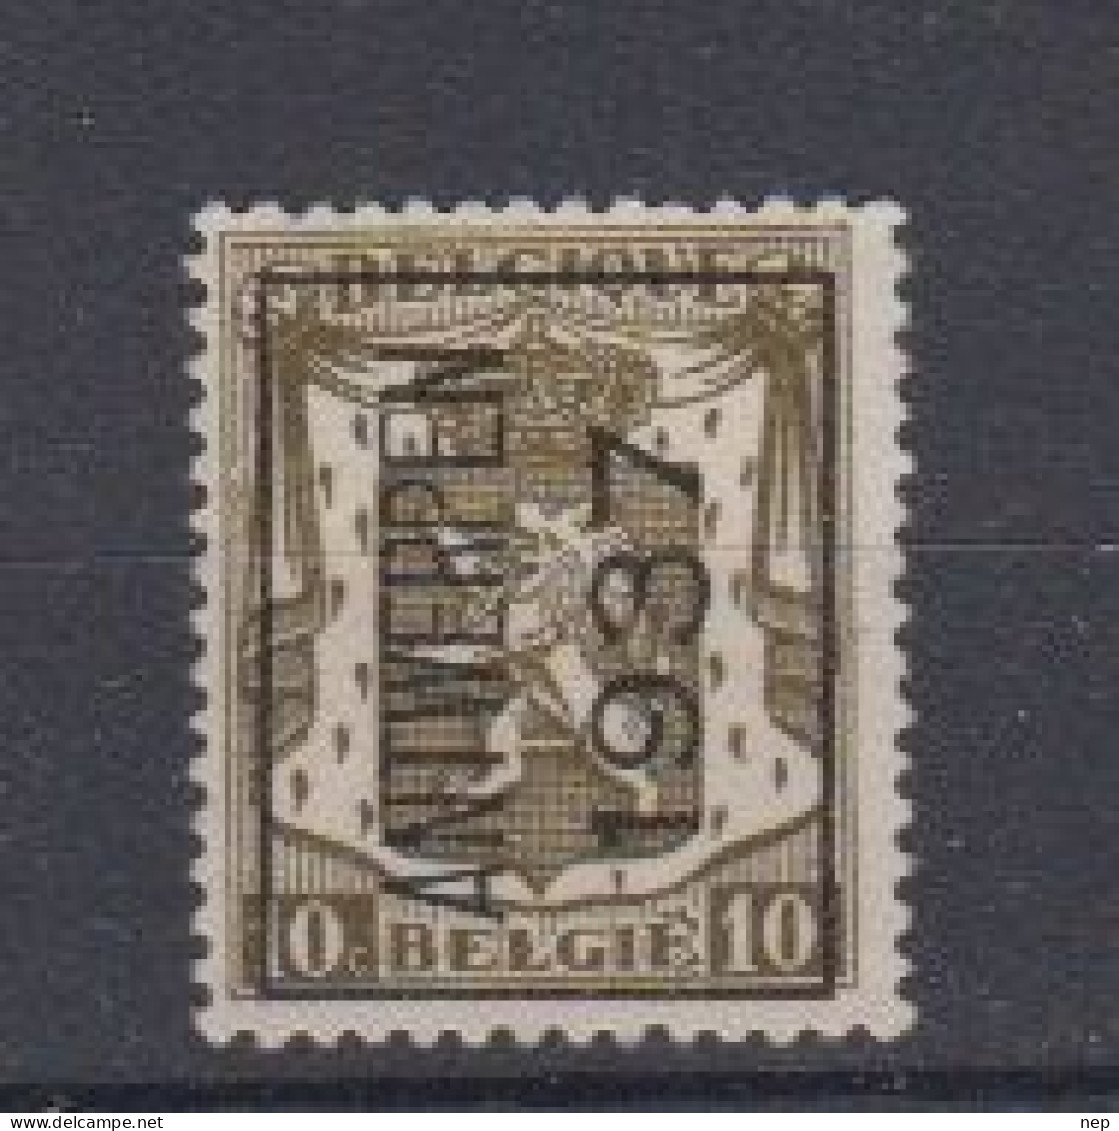 BELGIË - PREO - 1937 - Nr 327 A - ANTWERPEN 1937 - (*) - Typos 1936-51 (Petit Sceau)